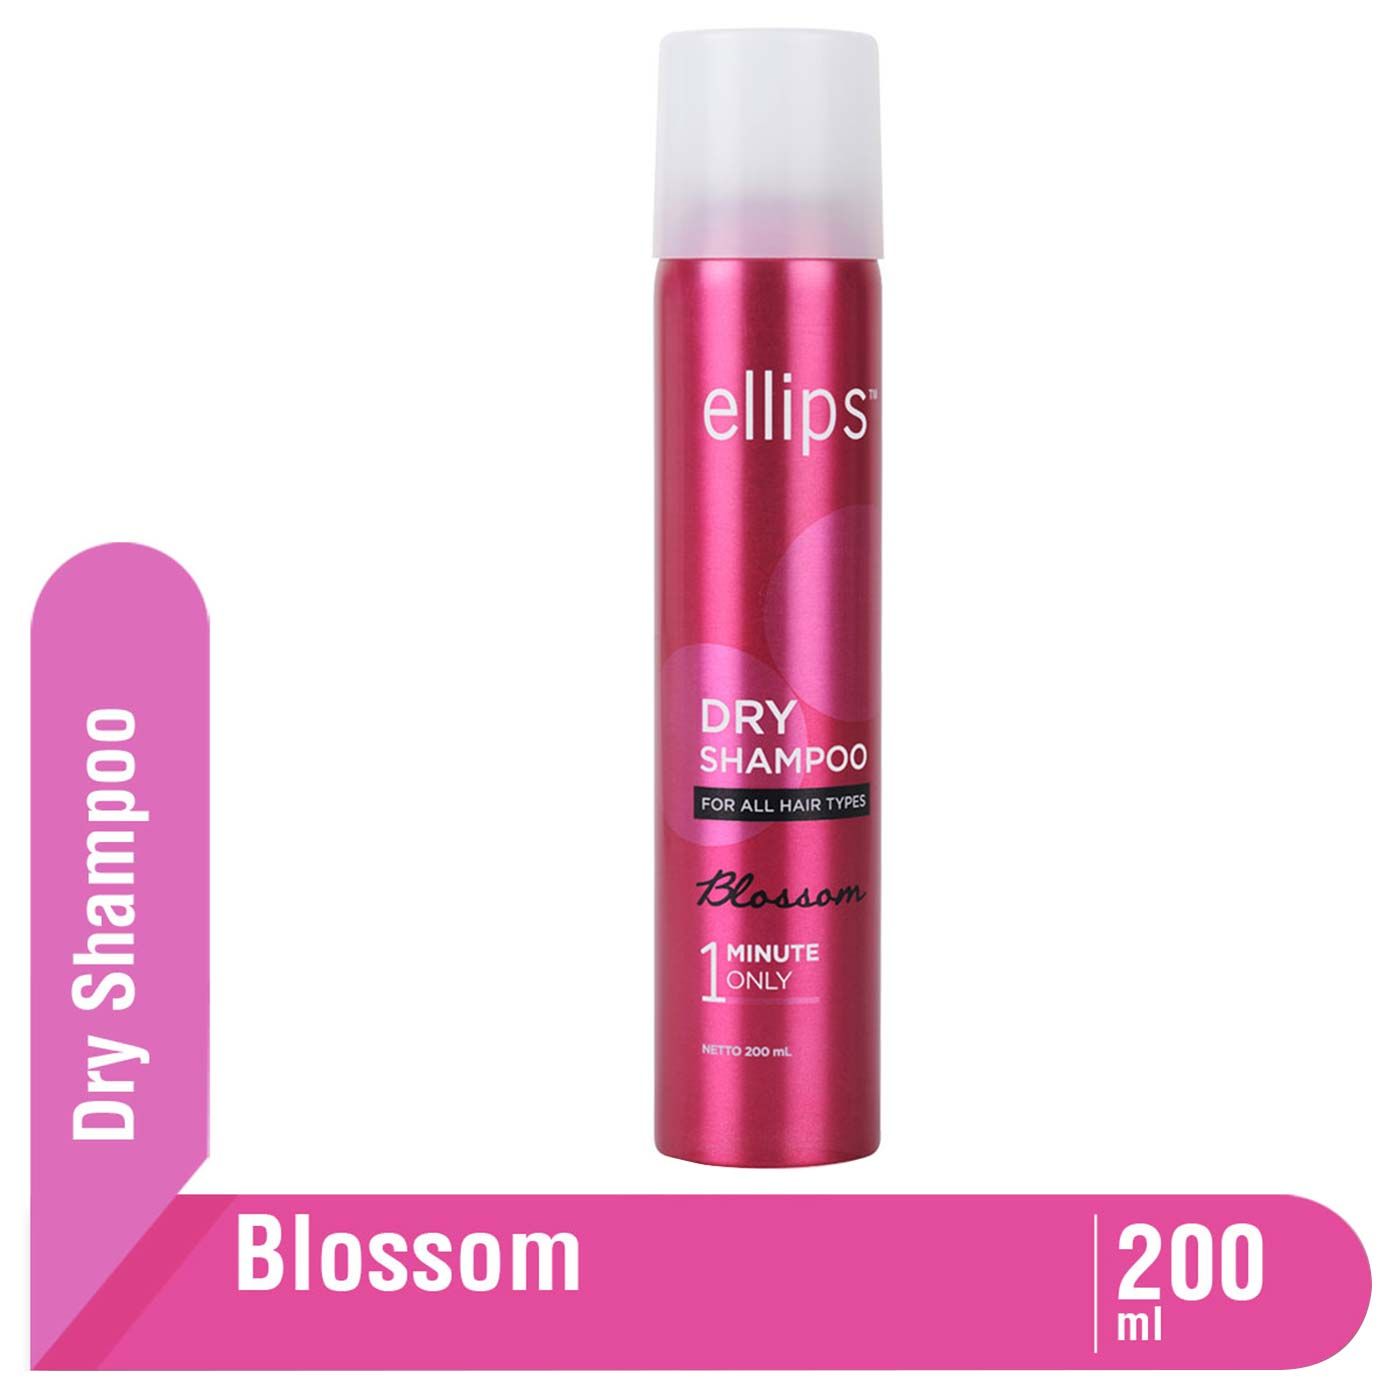 Ellips Dry Shampoo Blossom 200ml - 1